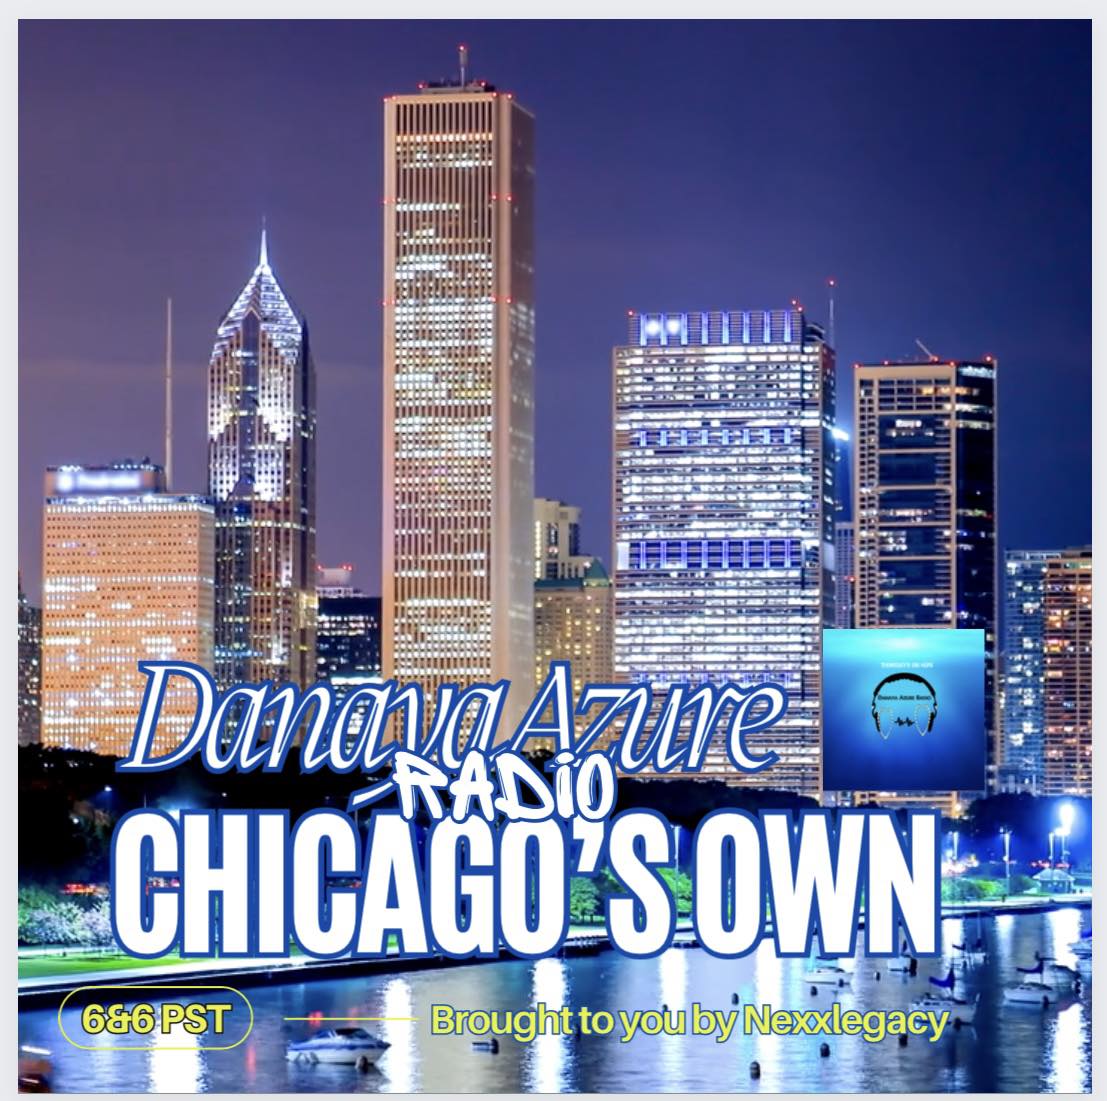 Chicago’s Own by Danaya Azure Radio on Nexxlegacy